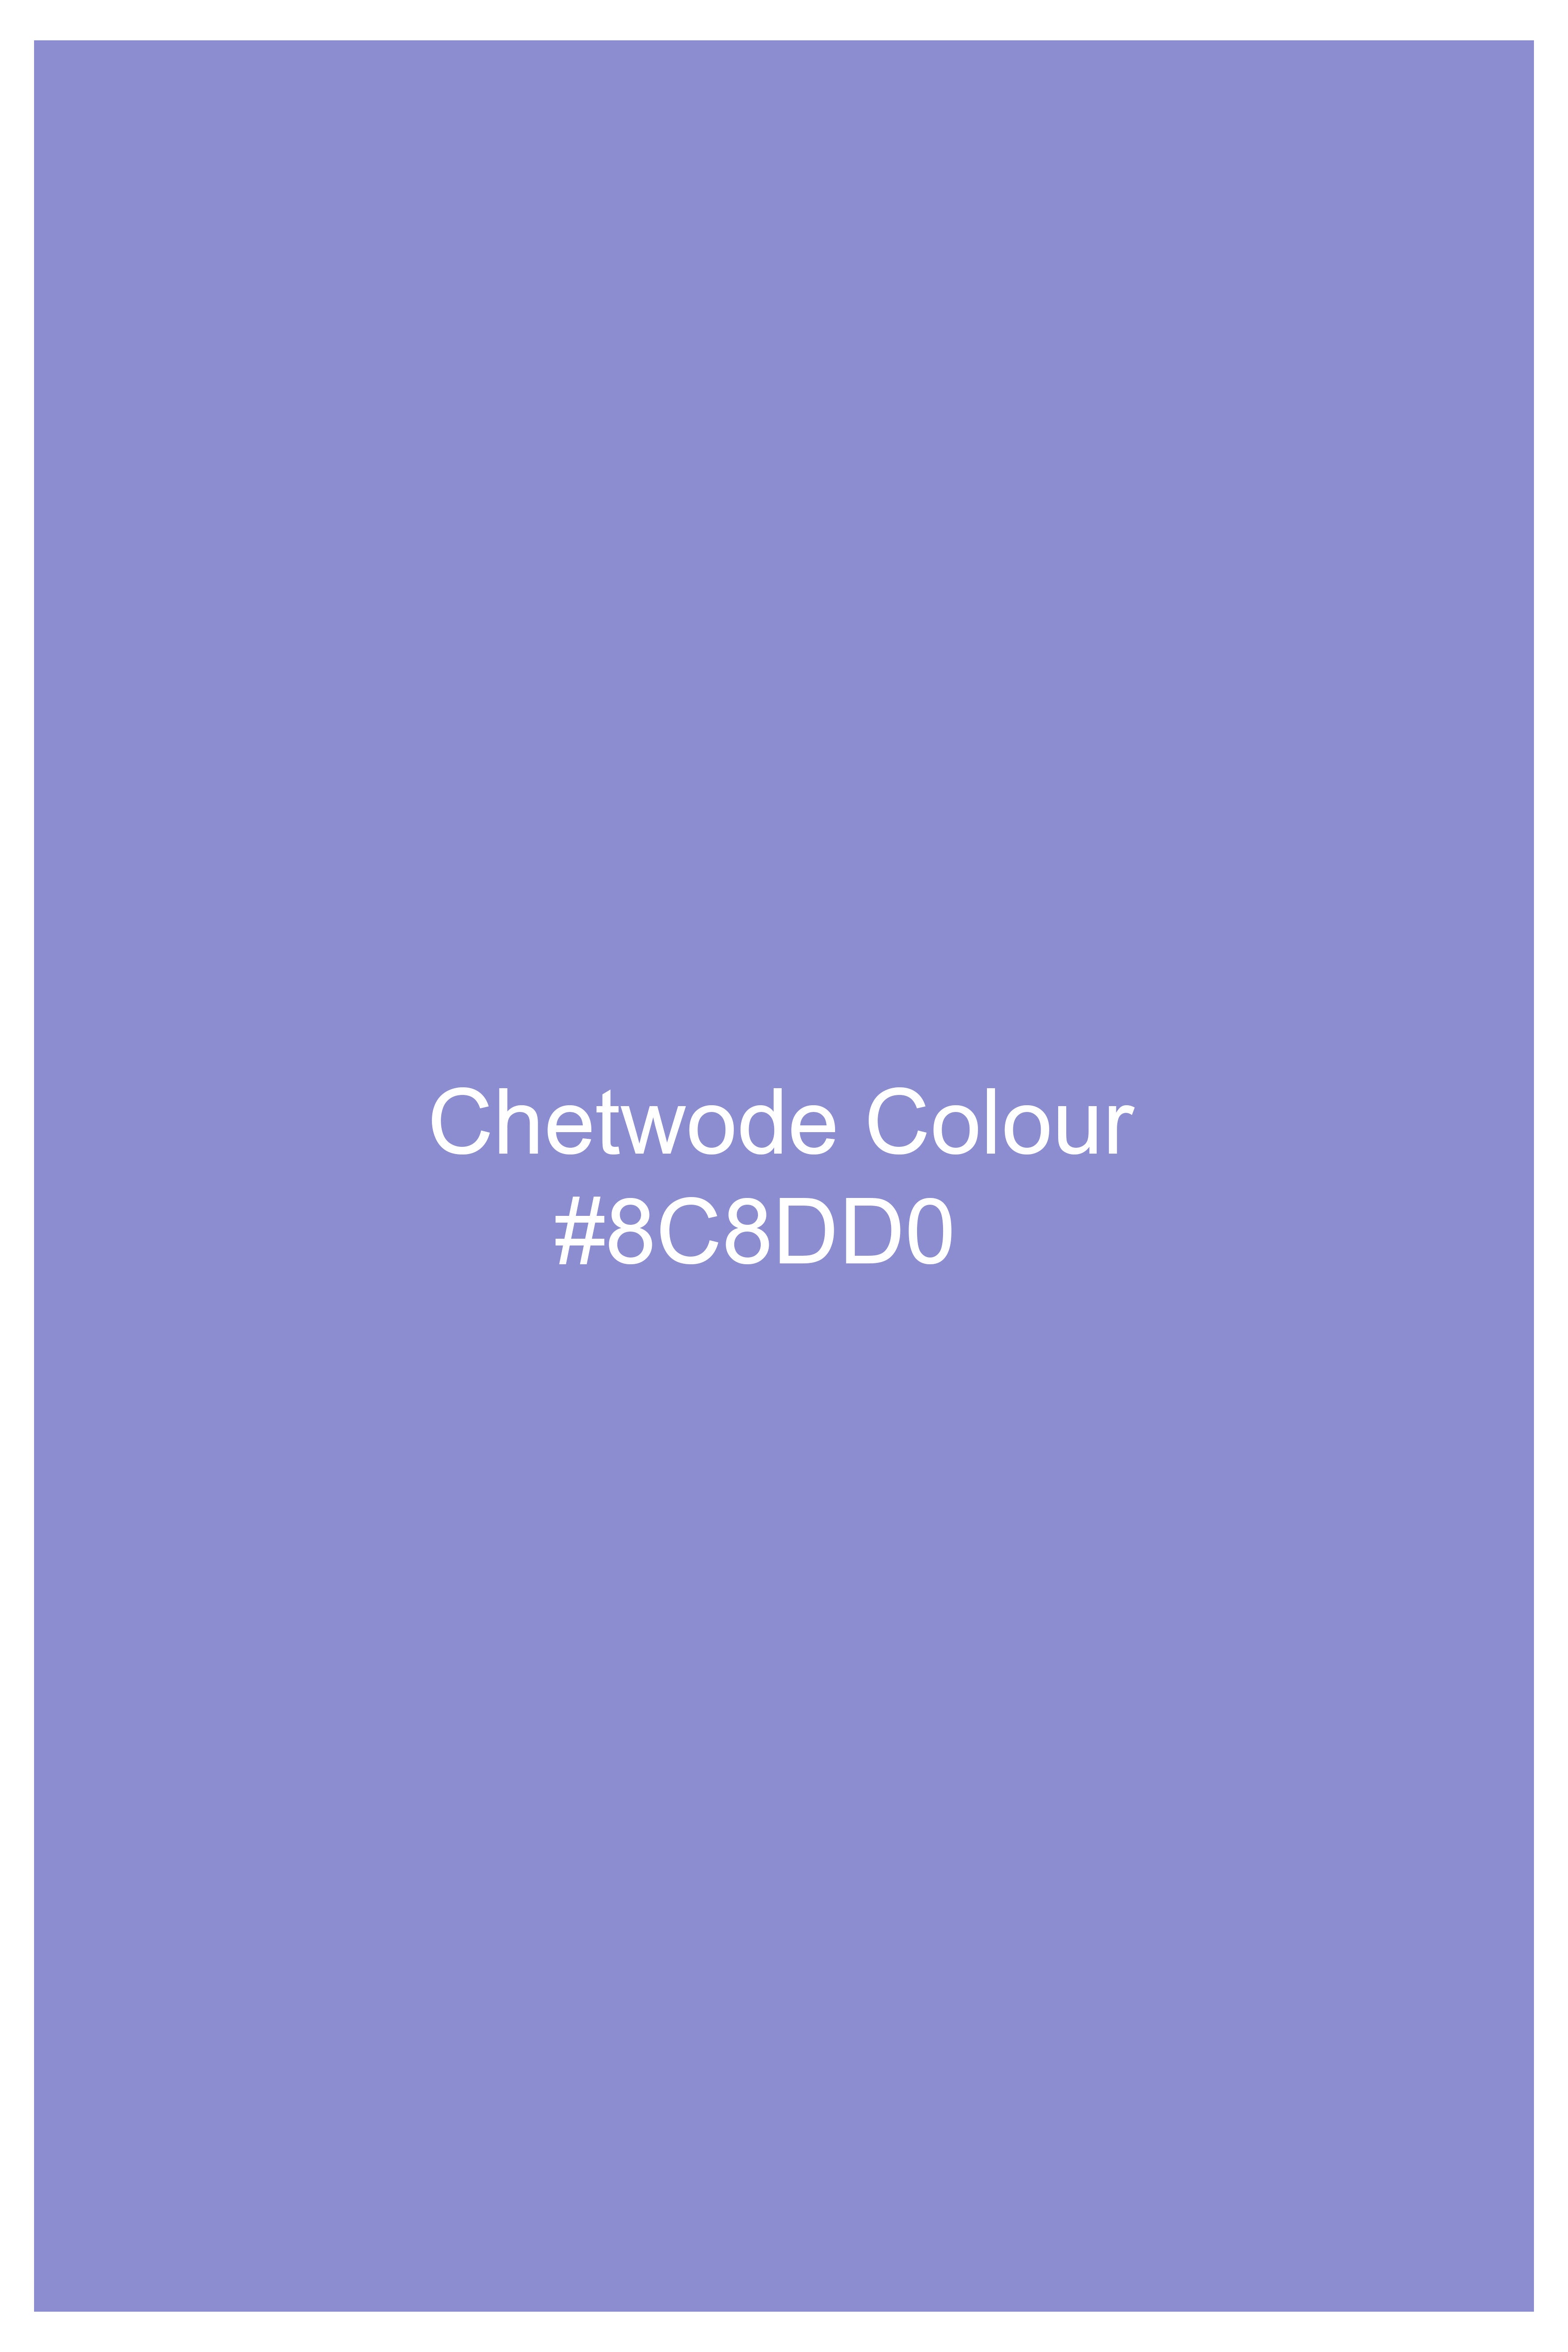 Chetwode Purple Premium Cotton Nehru Jacket WC3049-36, WC3049-38, WC3049-40, WC3049-42, WC3049-44, WC3049-46, WC3049-48, WC3049-50, WC3049-52, WC3049-54, WC3049-56, WC3049-58, WC3049-60